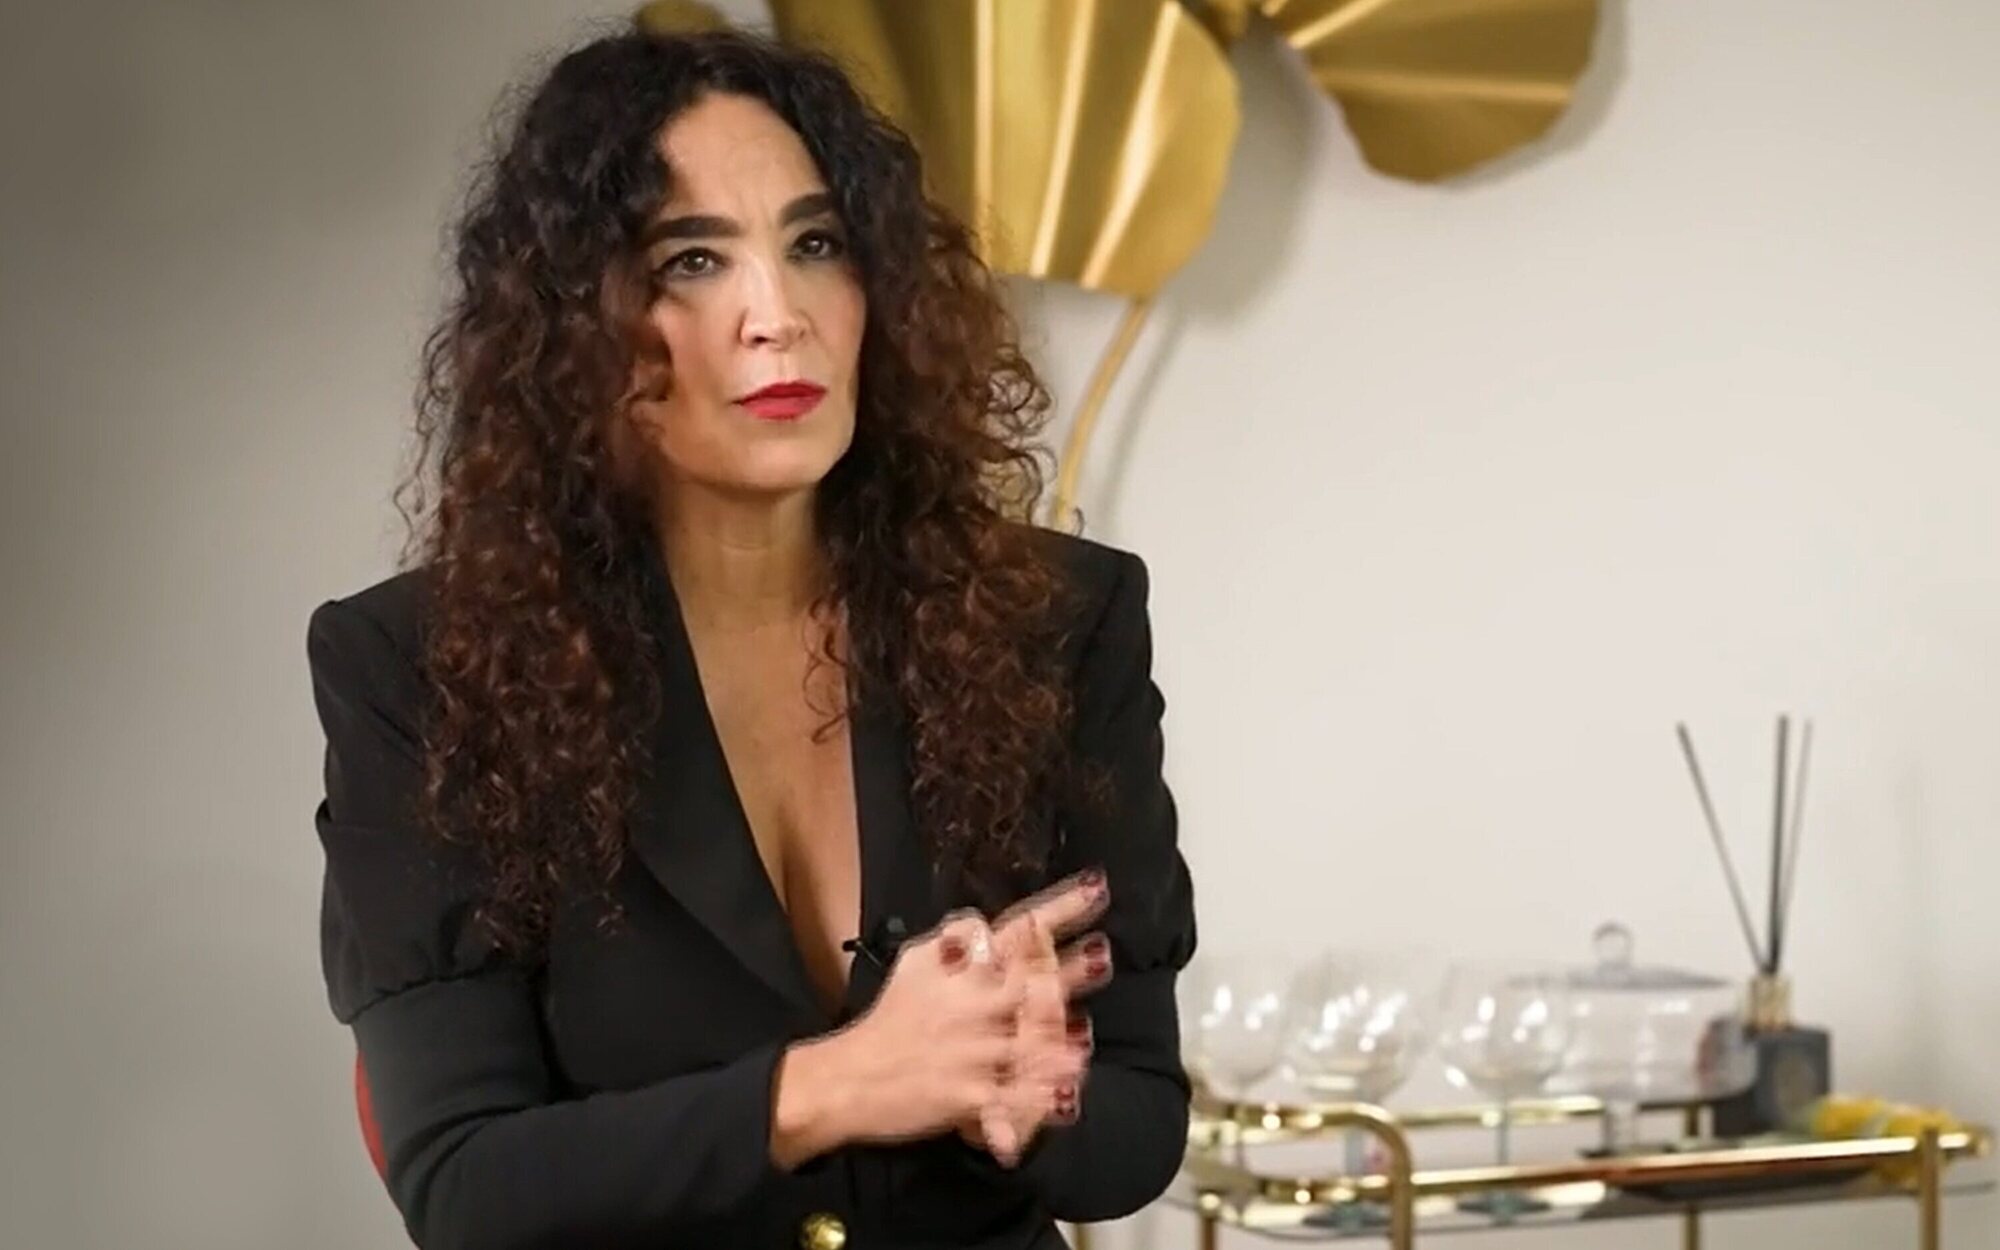 Cristina Rodríguez habla de su nula relación con Pelayo Díaz: "No sé si le saludaría"